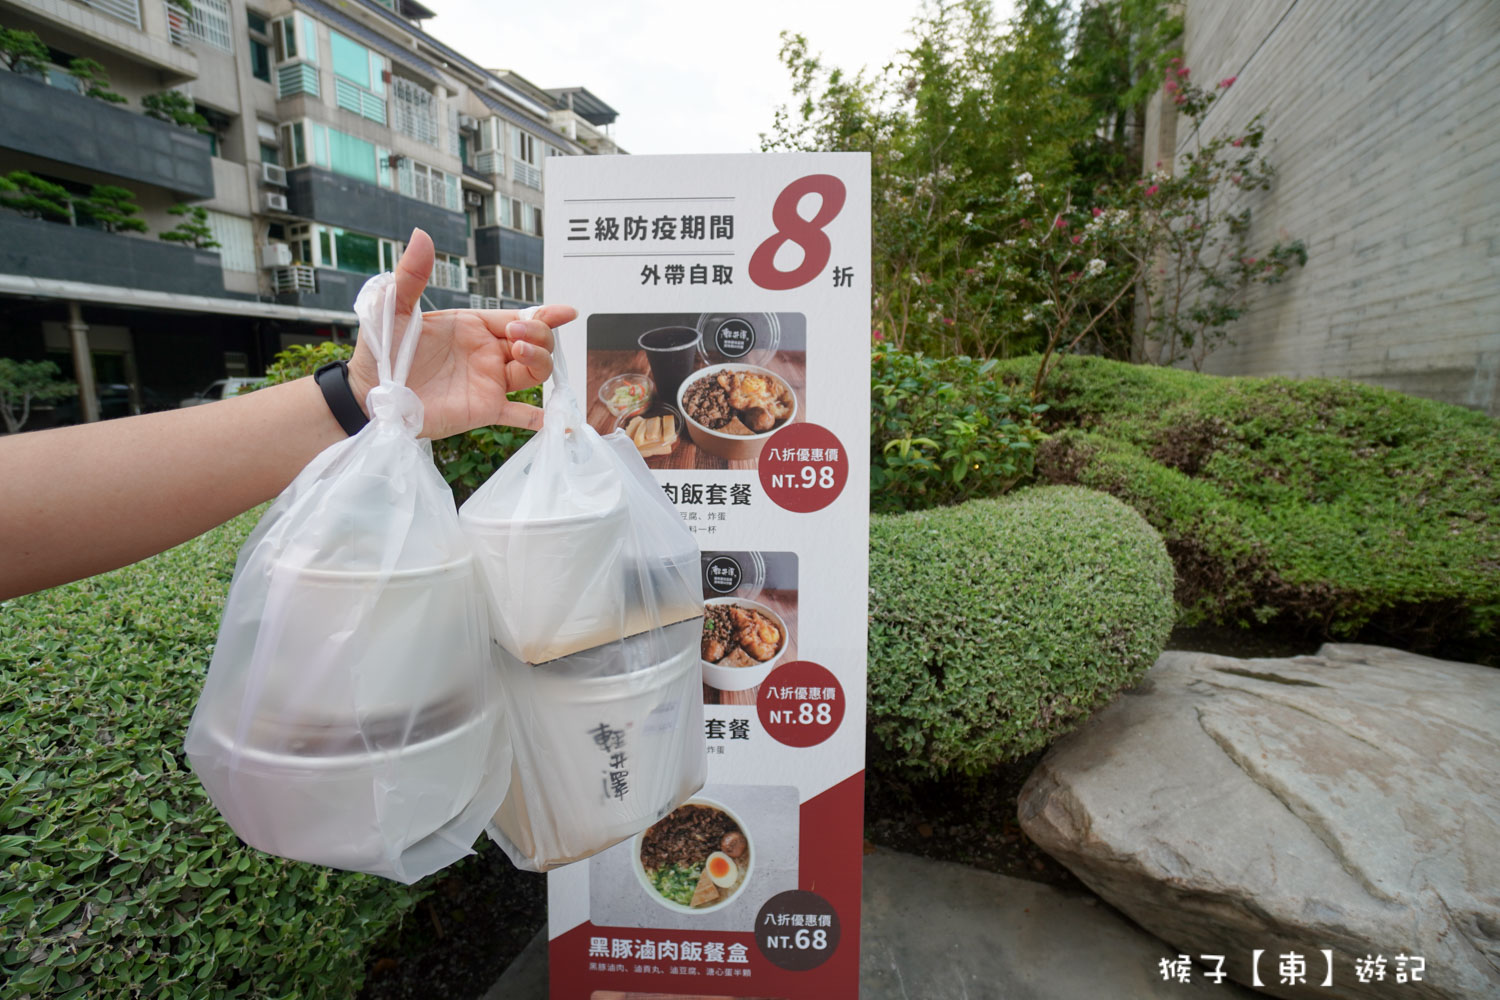 延伸閱讀：輕井澤人氣火鍋外帶8折 熟食、生食都可外帶 滷鴨血必點 還有肉燥飯